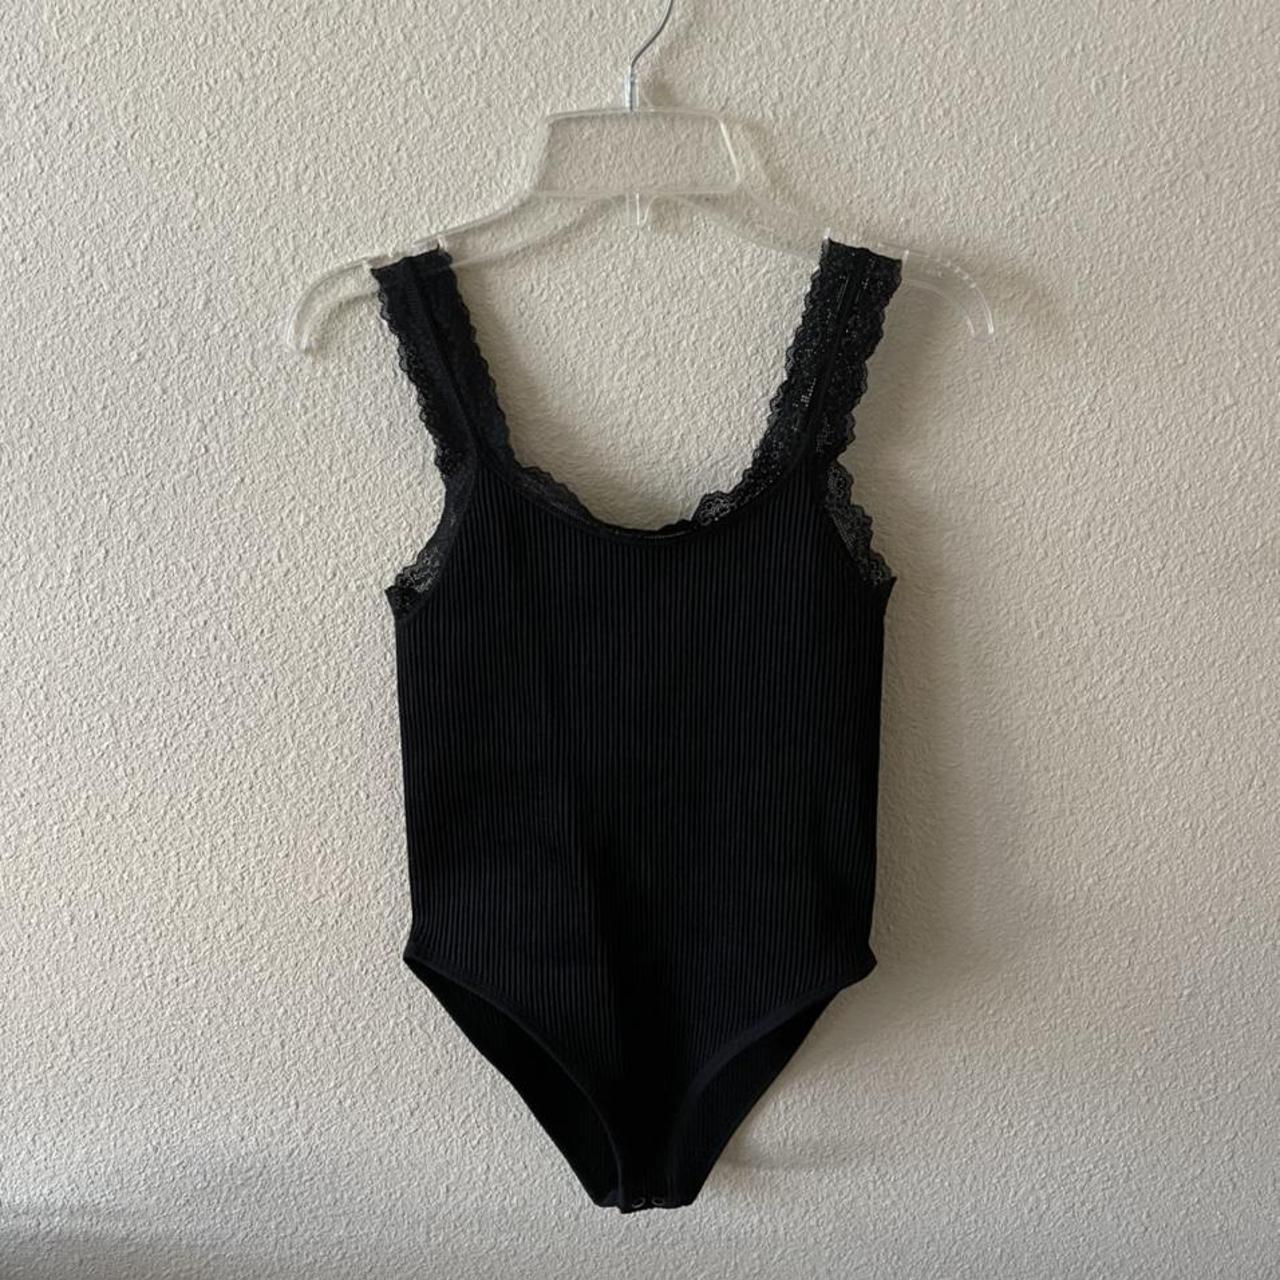 black laced bodysuit 🖤 Size s/m #bodysuit... - Depop